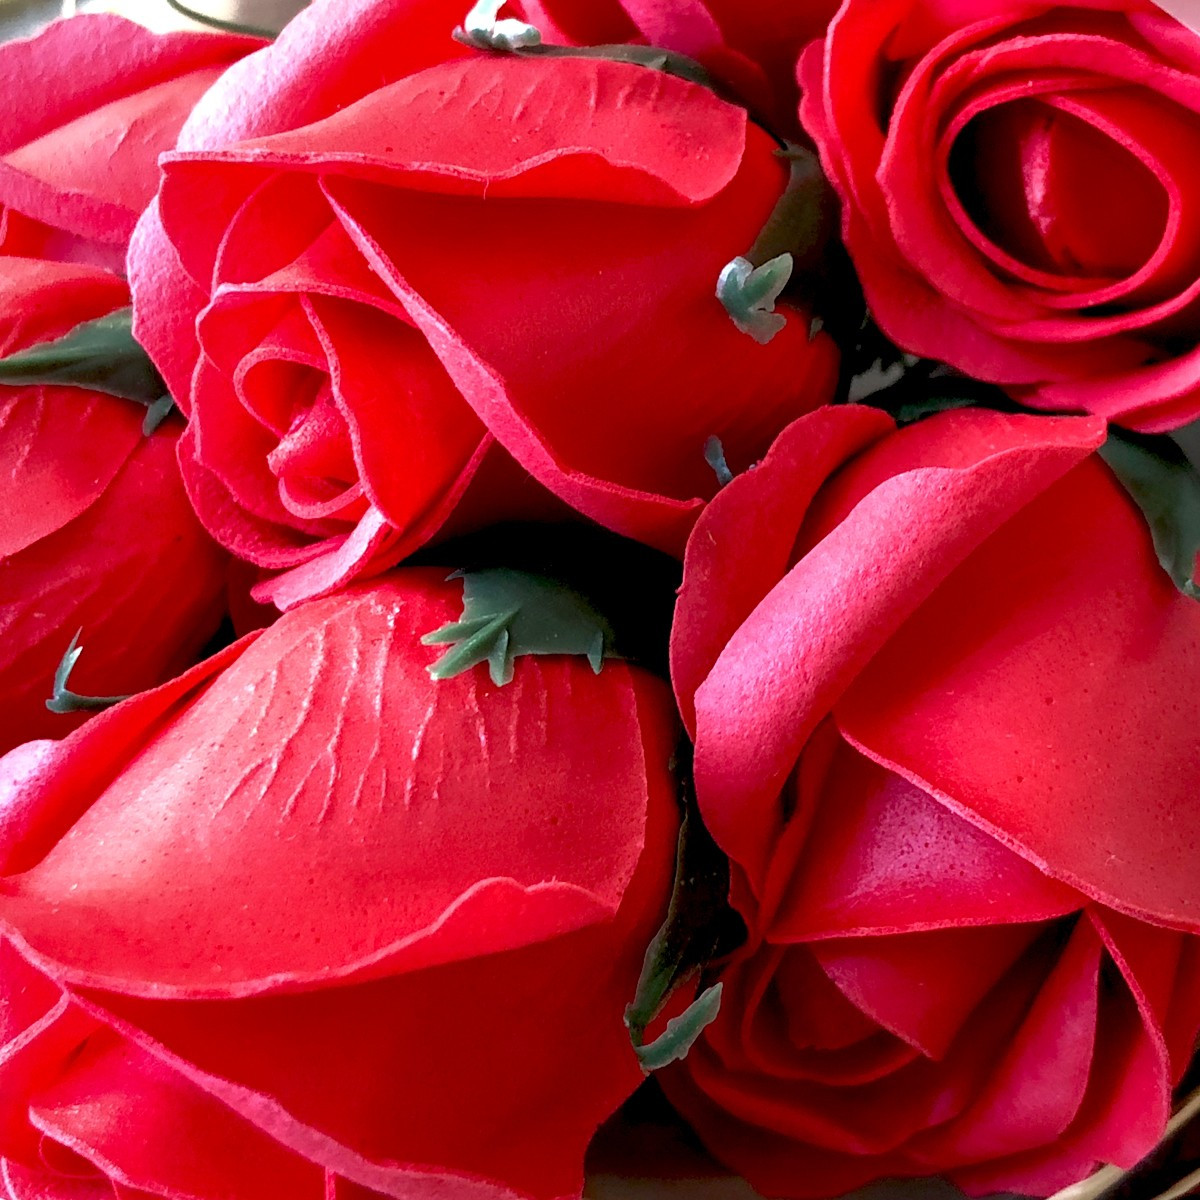 Cadeaux En Vrac 2 Ensembles Coffret Cadeau Rose Bain D'Animaux En Souvenir  Cadeaux Bouquet De Fleurs Parfumé Roses Coffret C[u8696] - Cdiscount Au  quotidien